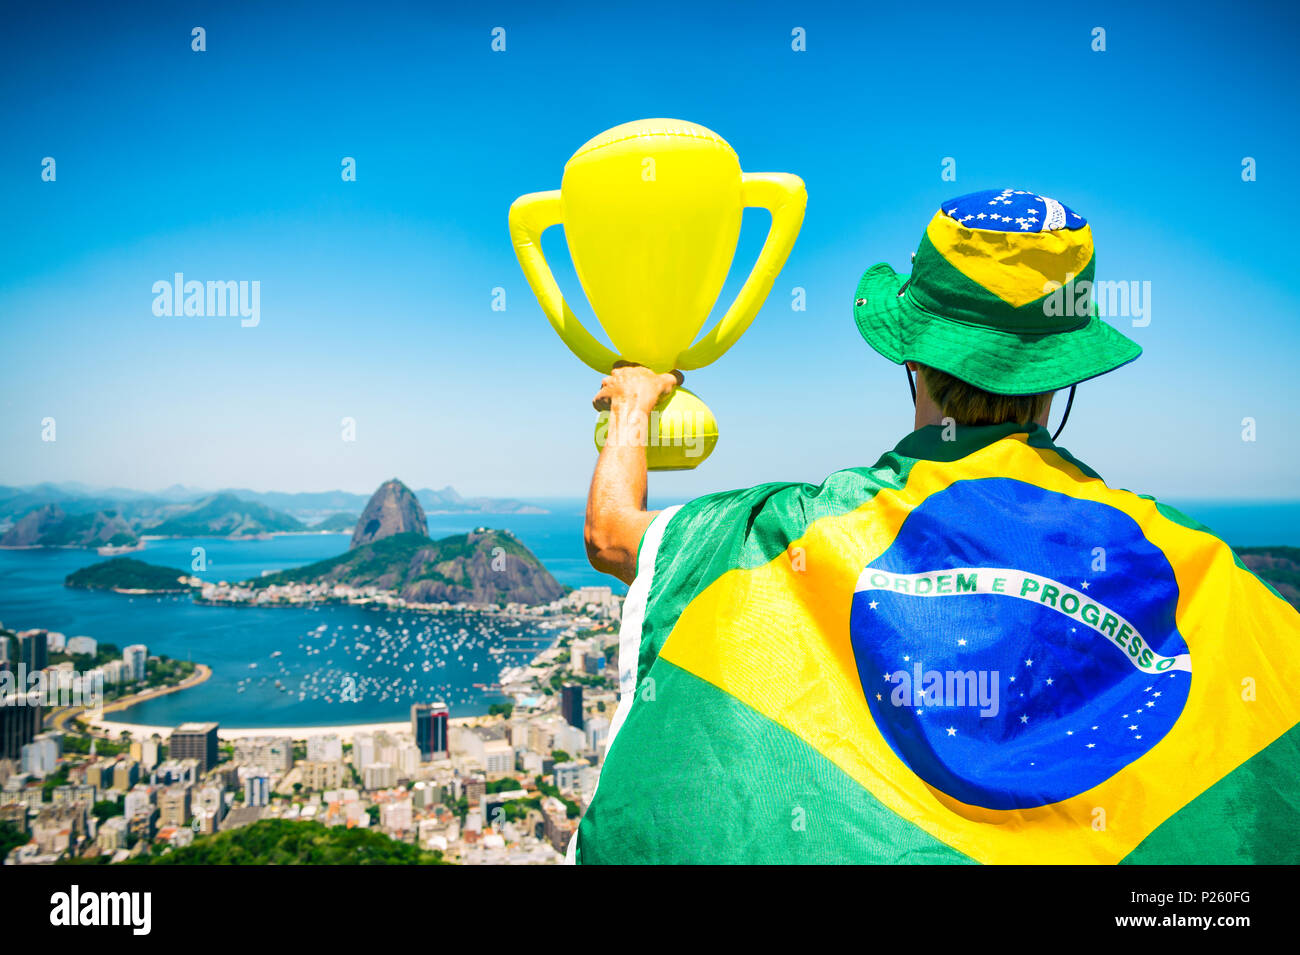 Champion du Brésil enveloppée dans un drapeau holding trophy de Sugarloaf Mountain View Botafogo Rio de Janeiro au Brésil. Banque D'Images